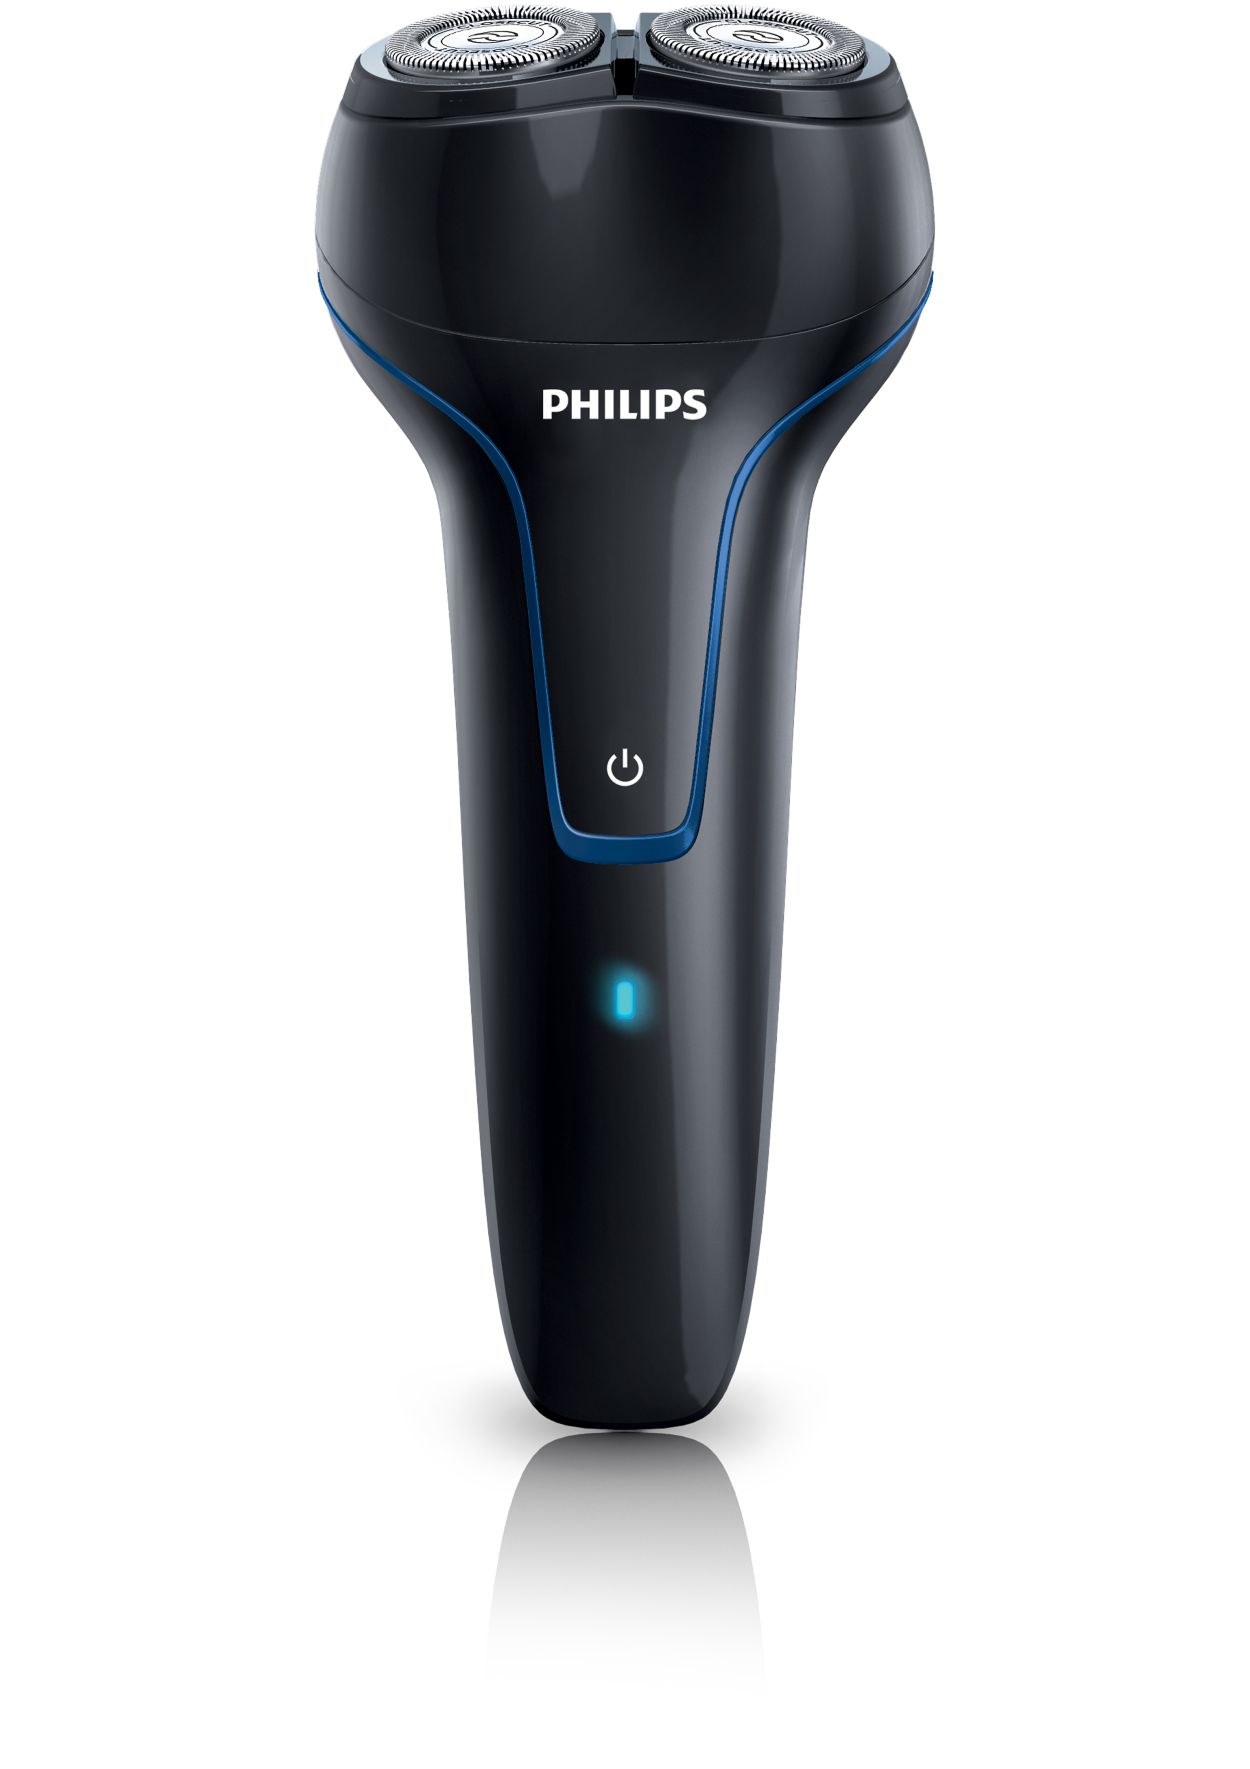 Филипс 18. Филипс pq1250. Бритва 5466/17 Philips. Бритва Филипс charge. Бритва Philips charge модель.